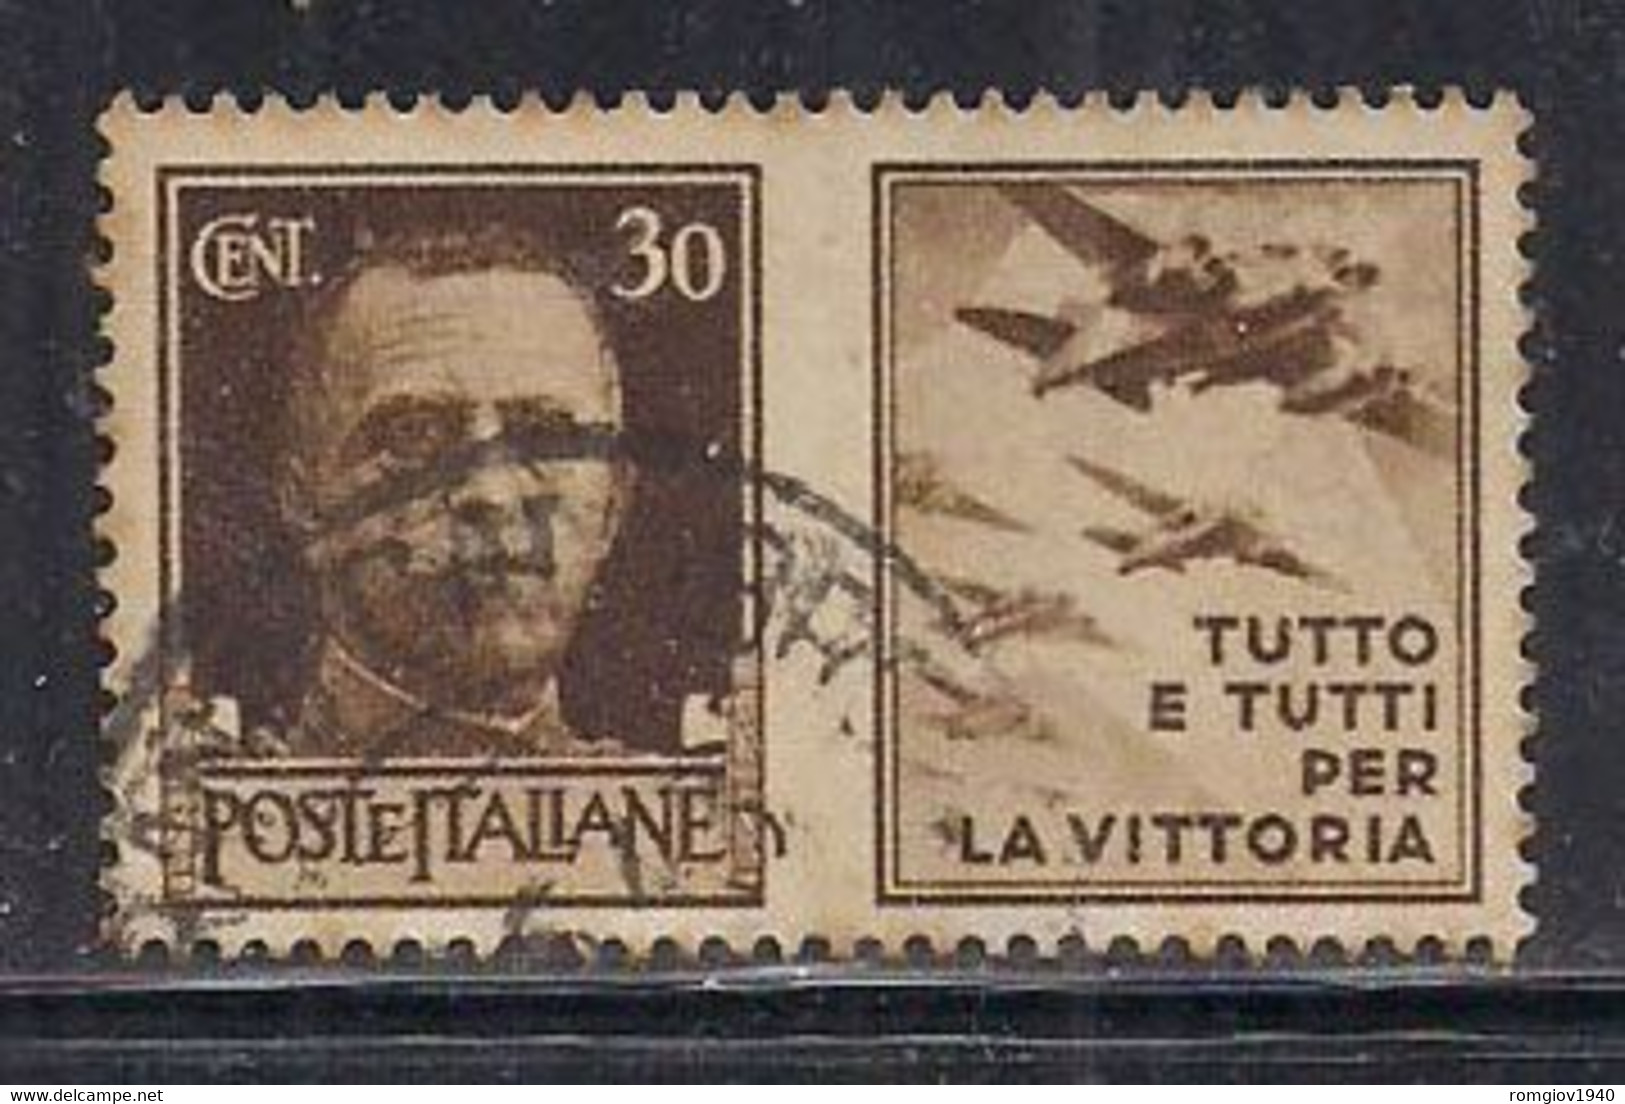 REGNO D'ITALIA 1942  PROPAGANDA DI GUERRA  SASS. 7 USATO VF - Pneumatic Mail